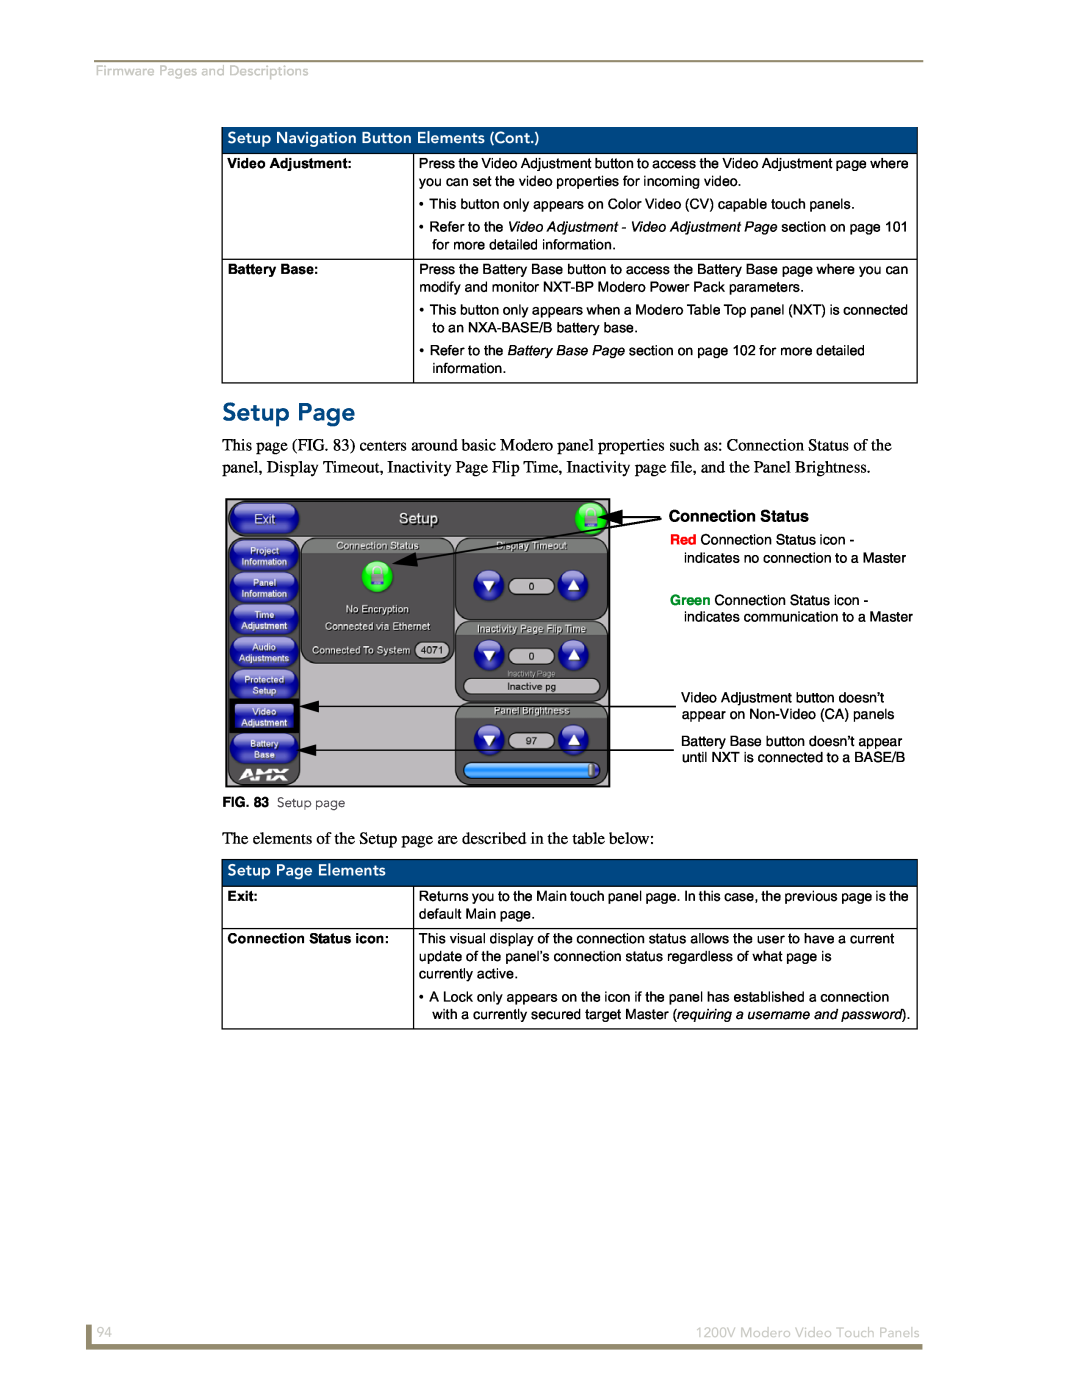 AMX NXT-1200V manual Setup Navigation Button Elements Cont, Connection Status, Setup Page Elements 